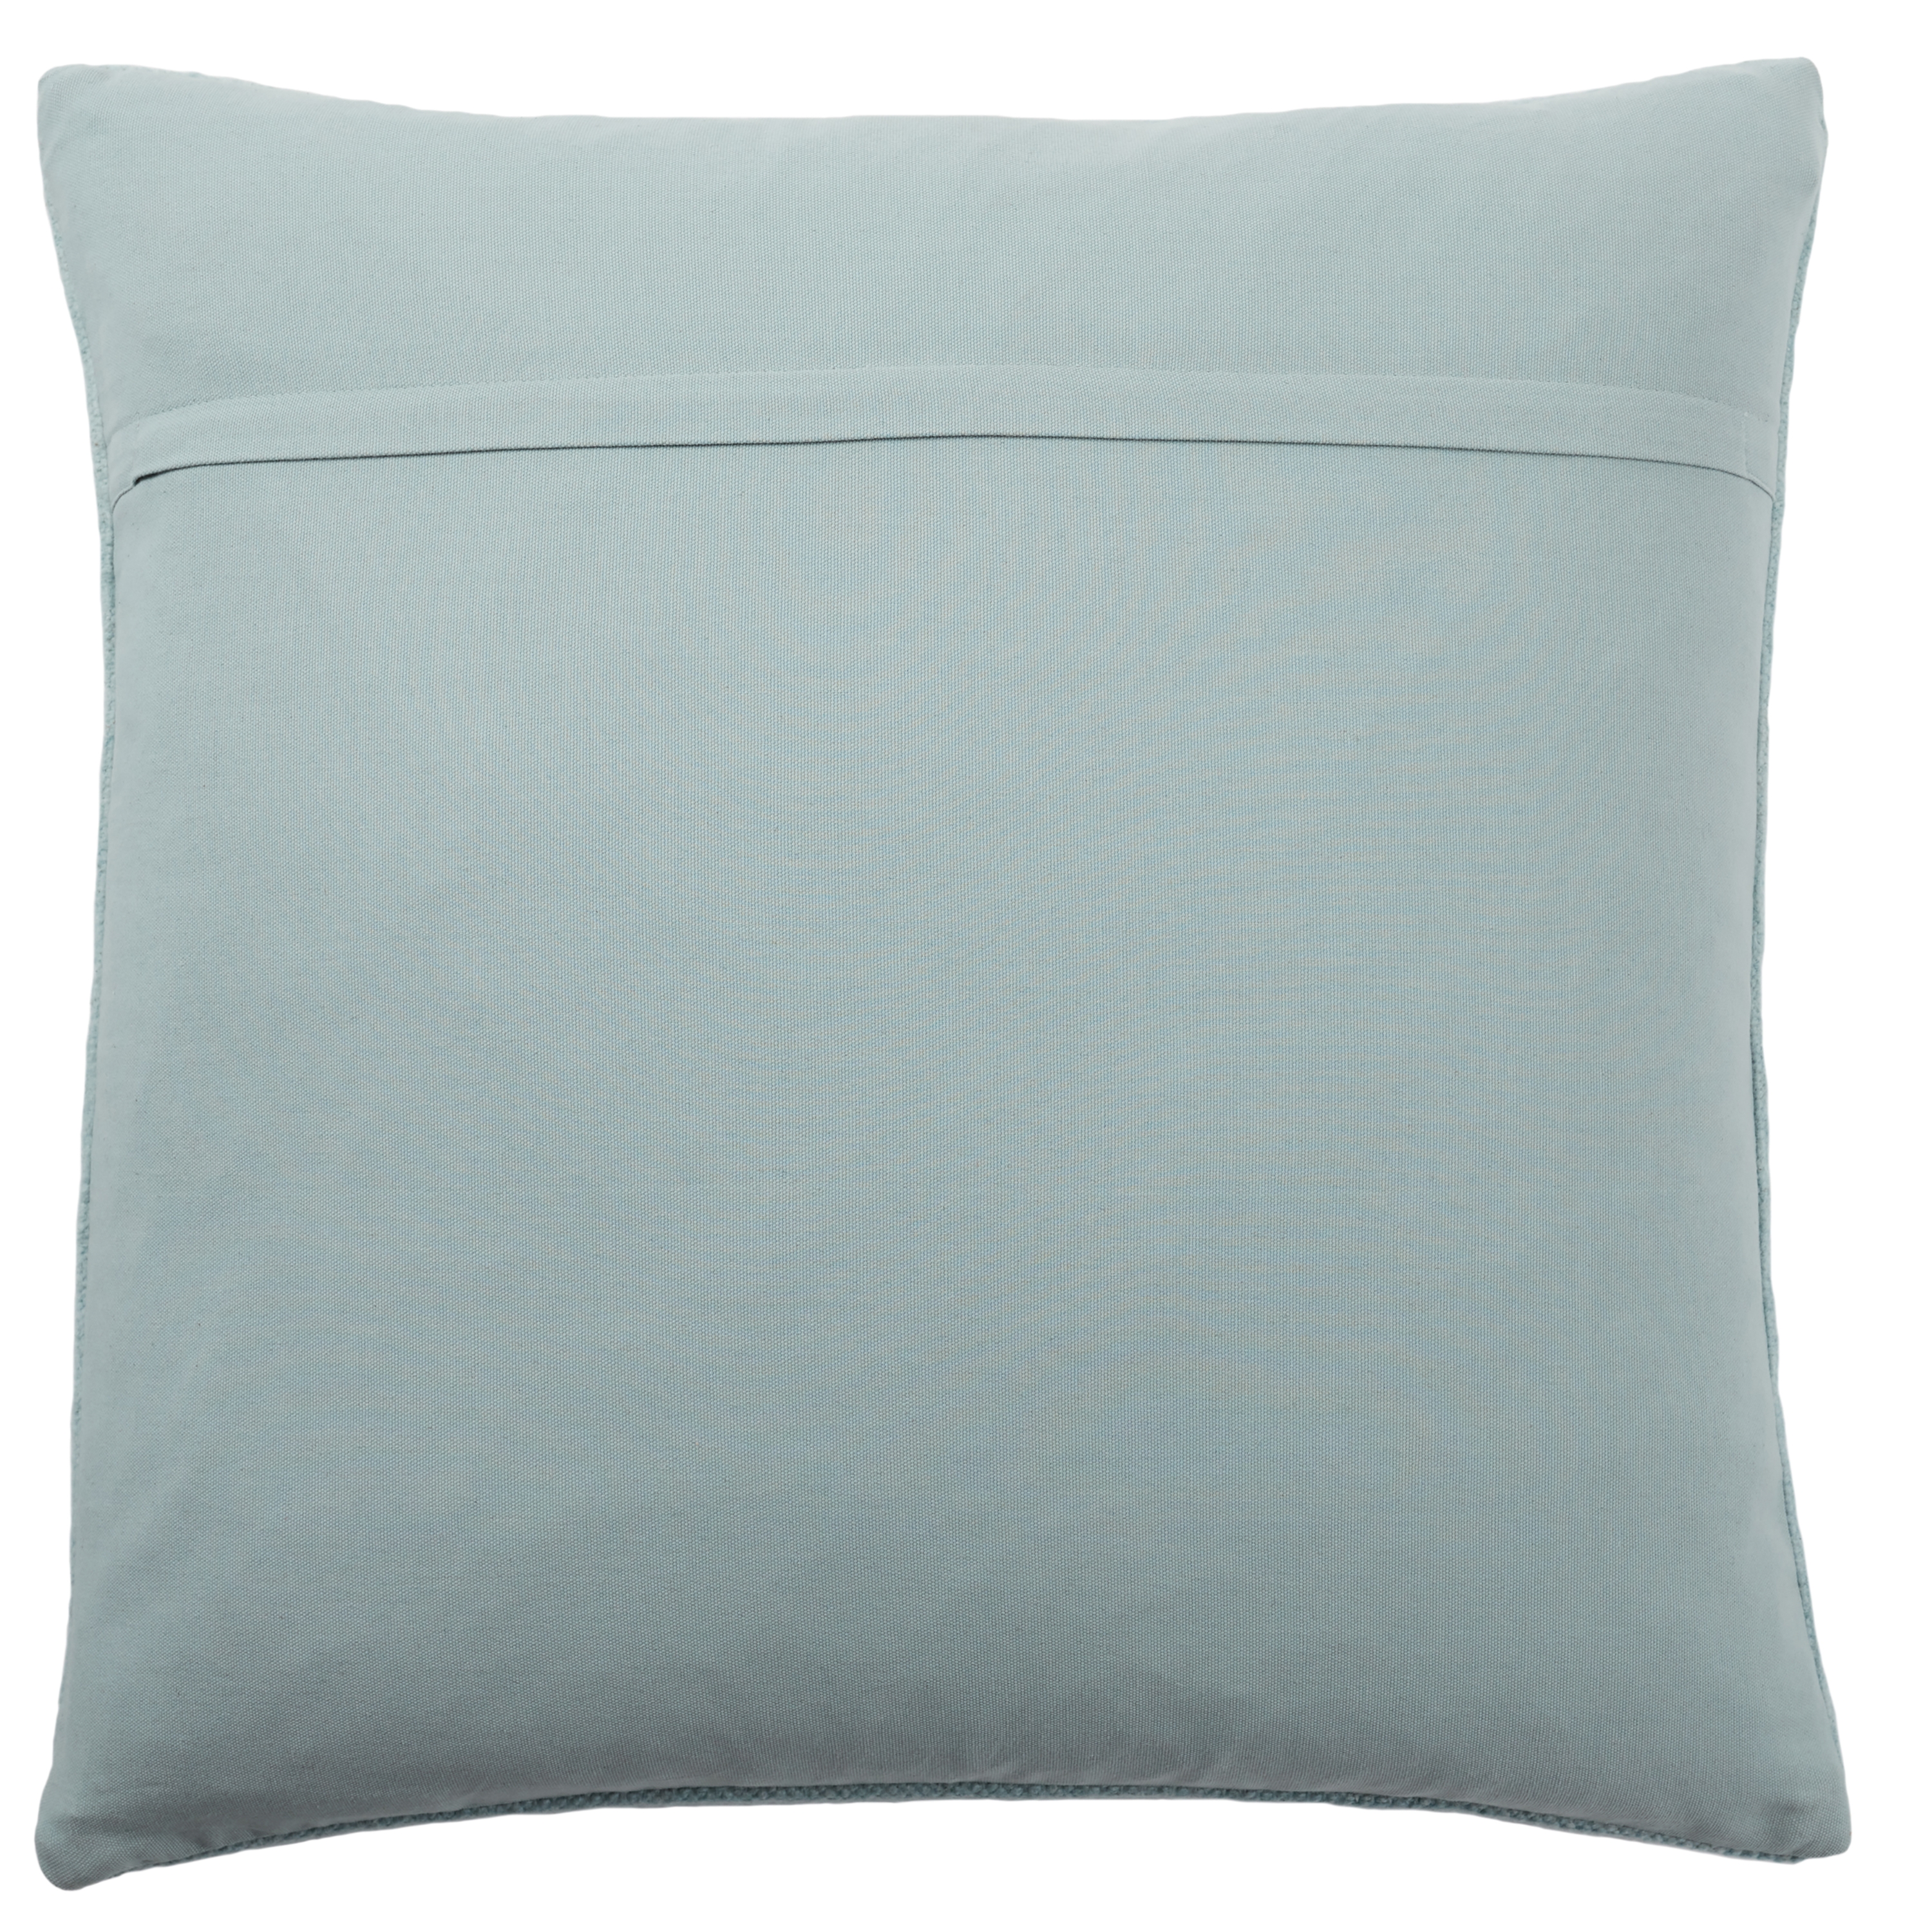 Elina Throw Pillow, Light Blue, 24" x 24" - Image 1